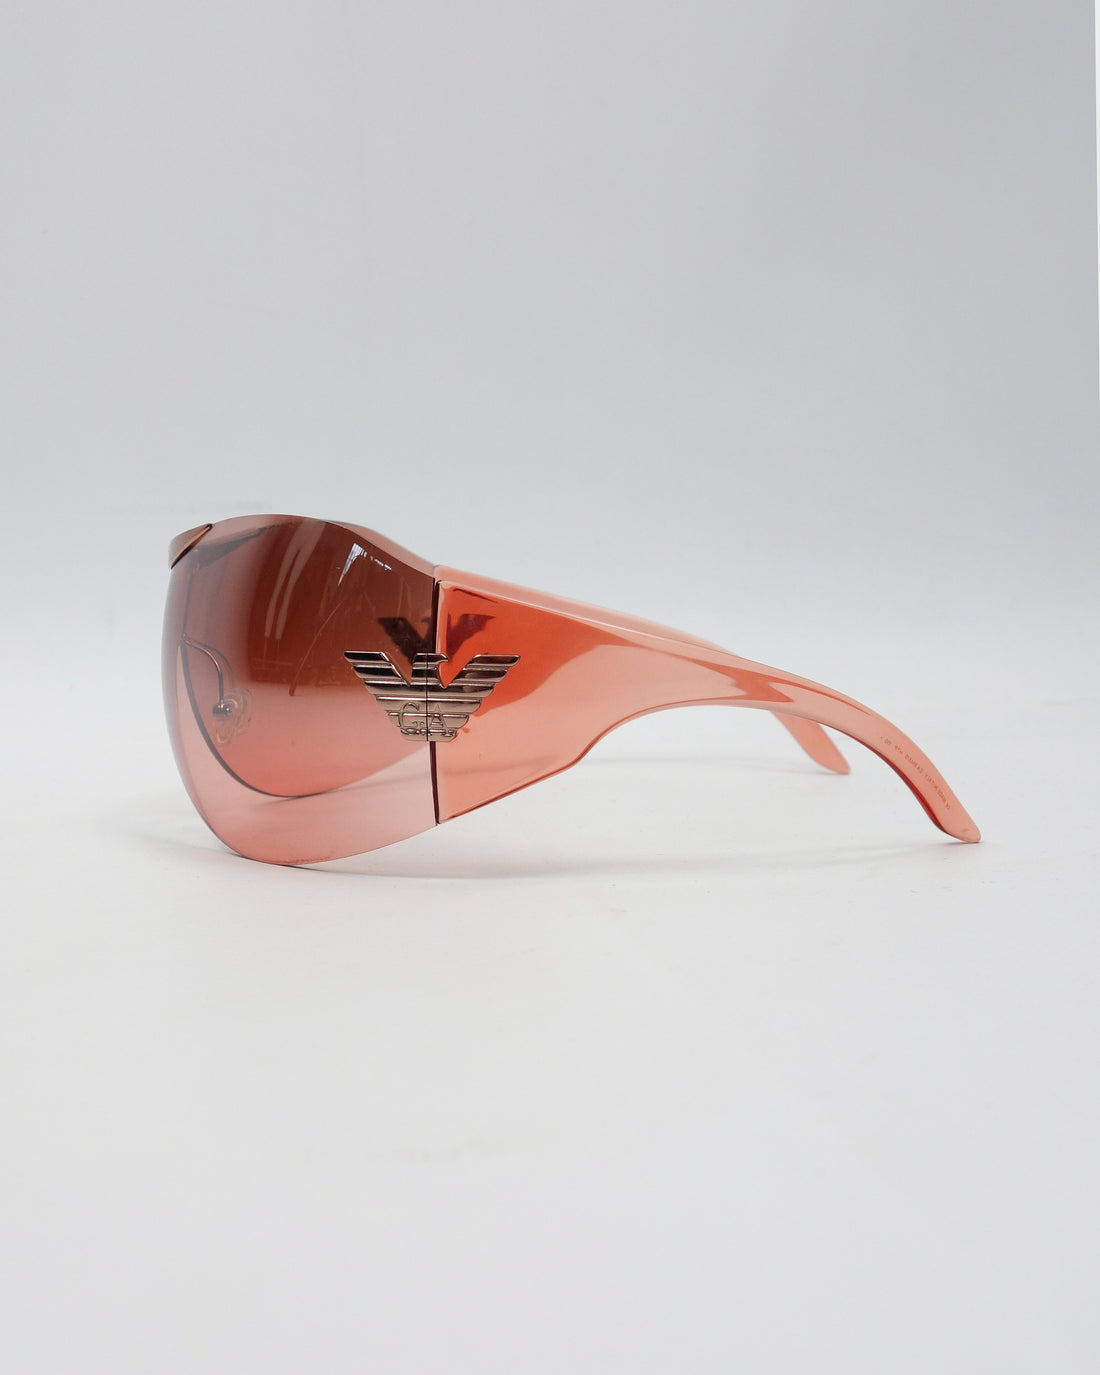 Armani Full Mask Copper Sunglasses 2000's